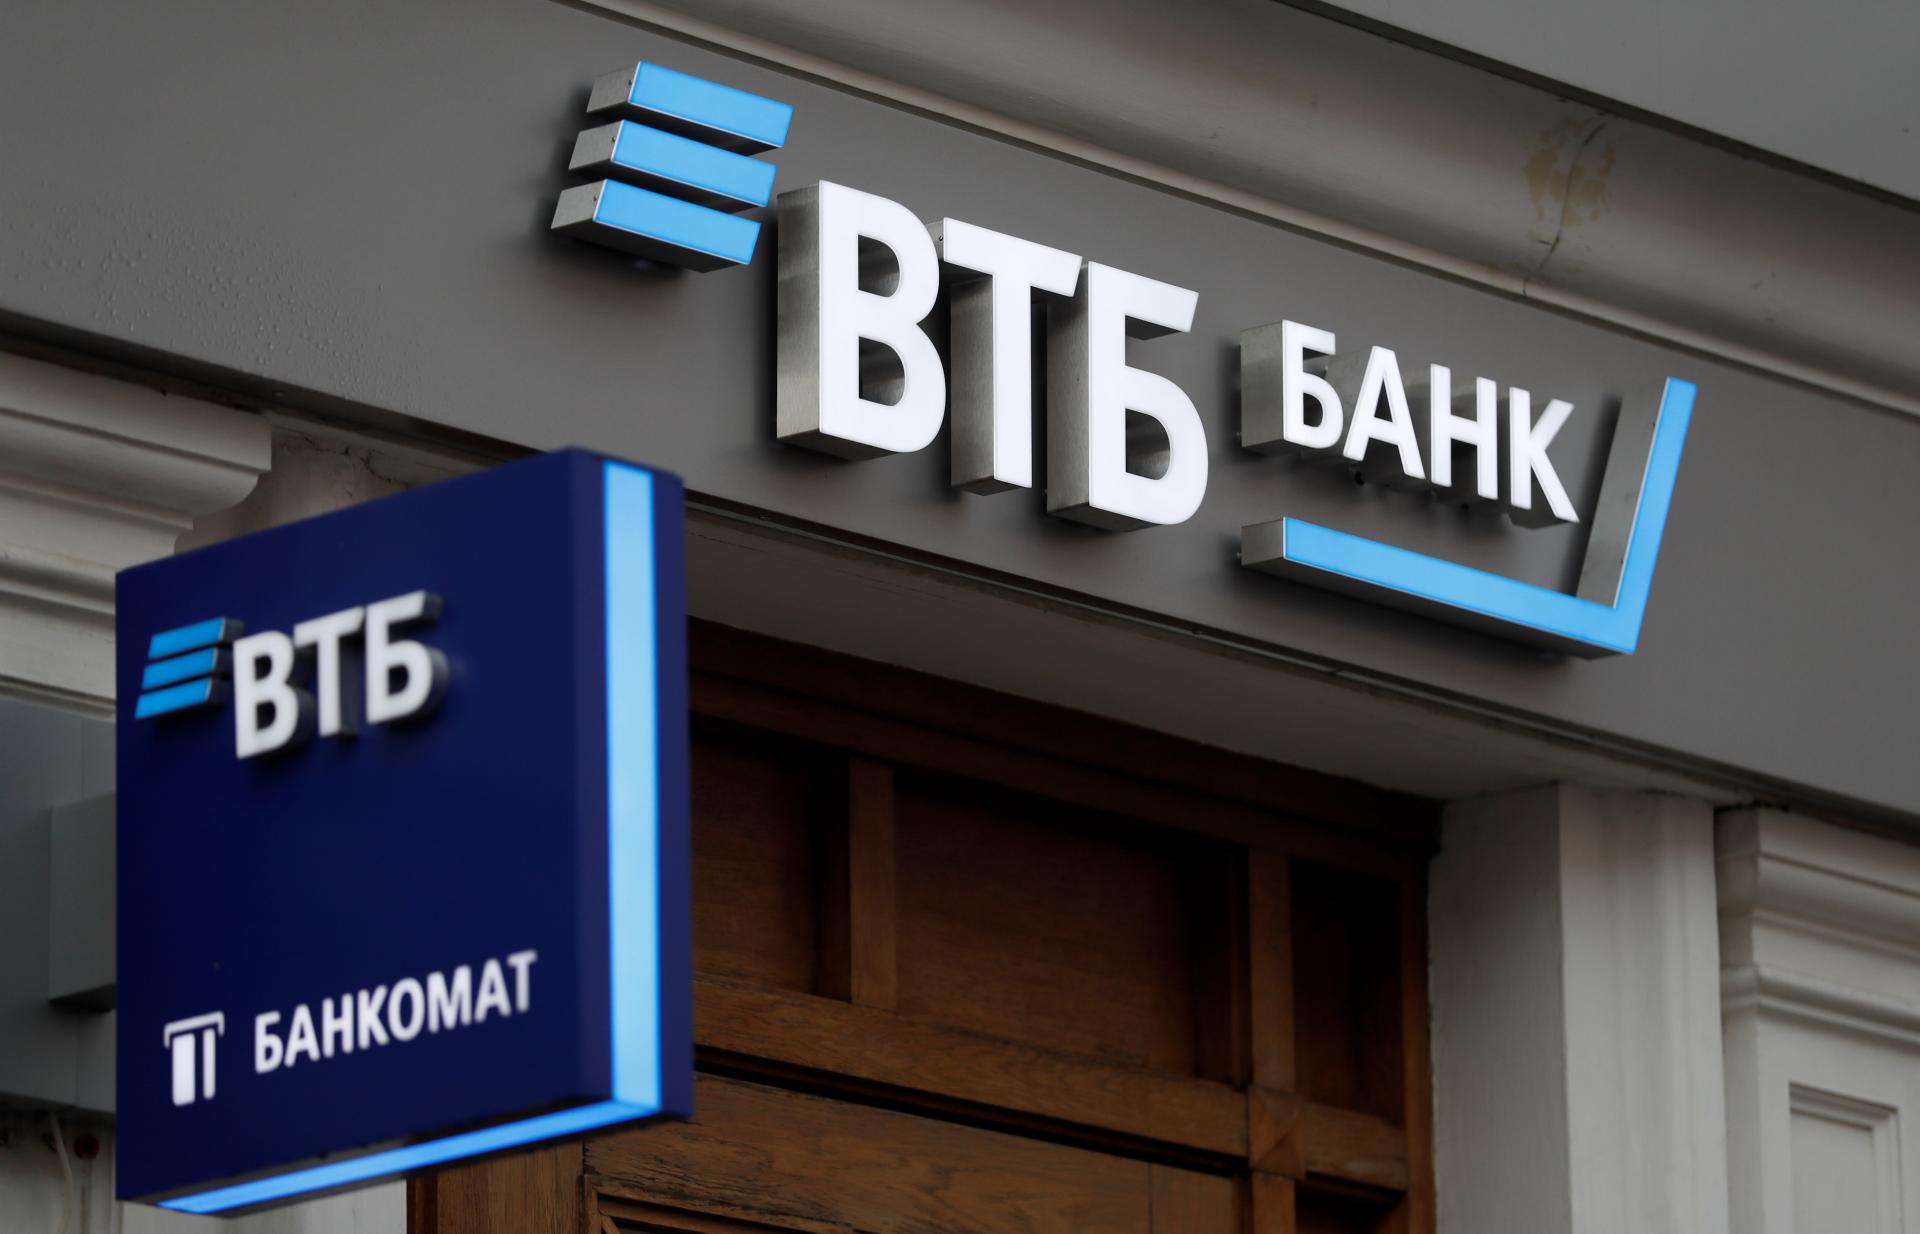 Spojené štáty obvinili šéfa ruskej banky VTB z porušovania sankcií. Tok peňazí chcú zastaviť